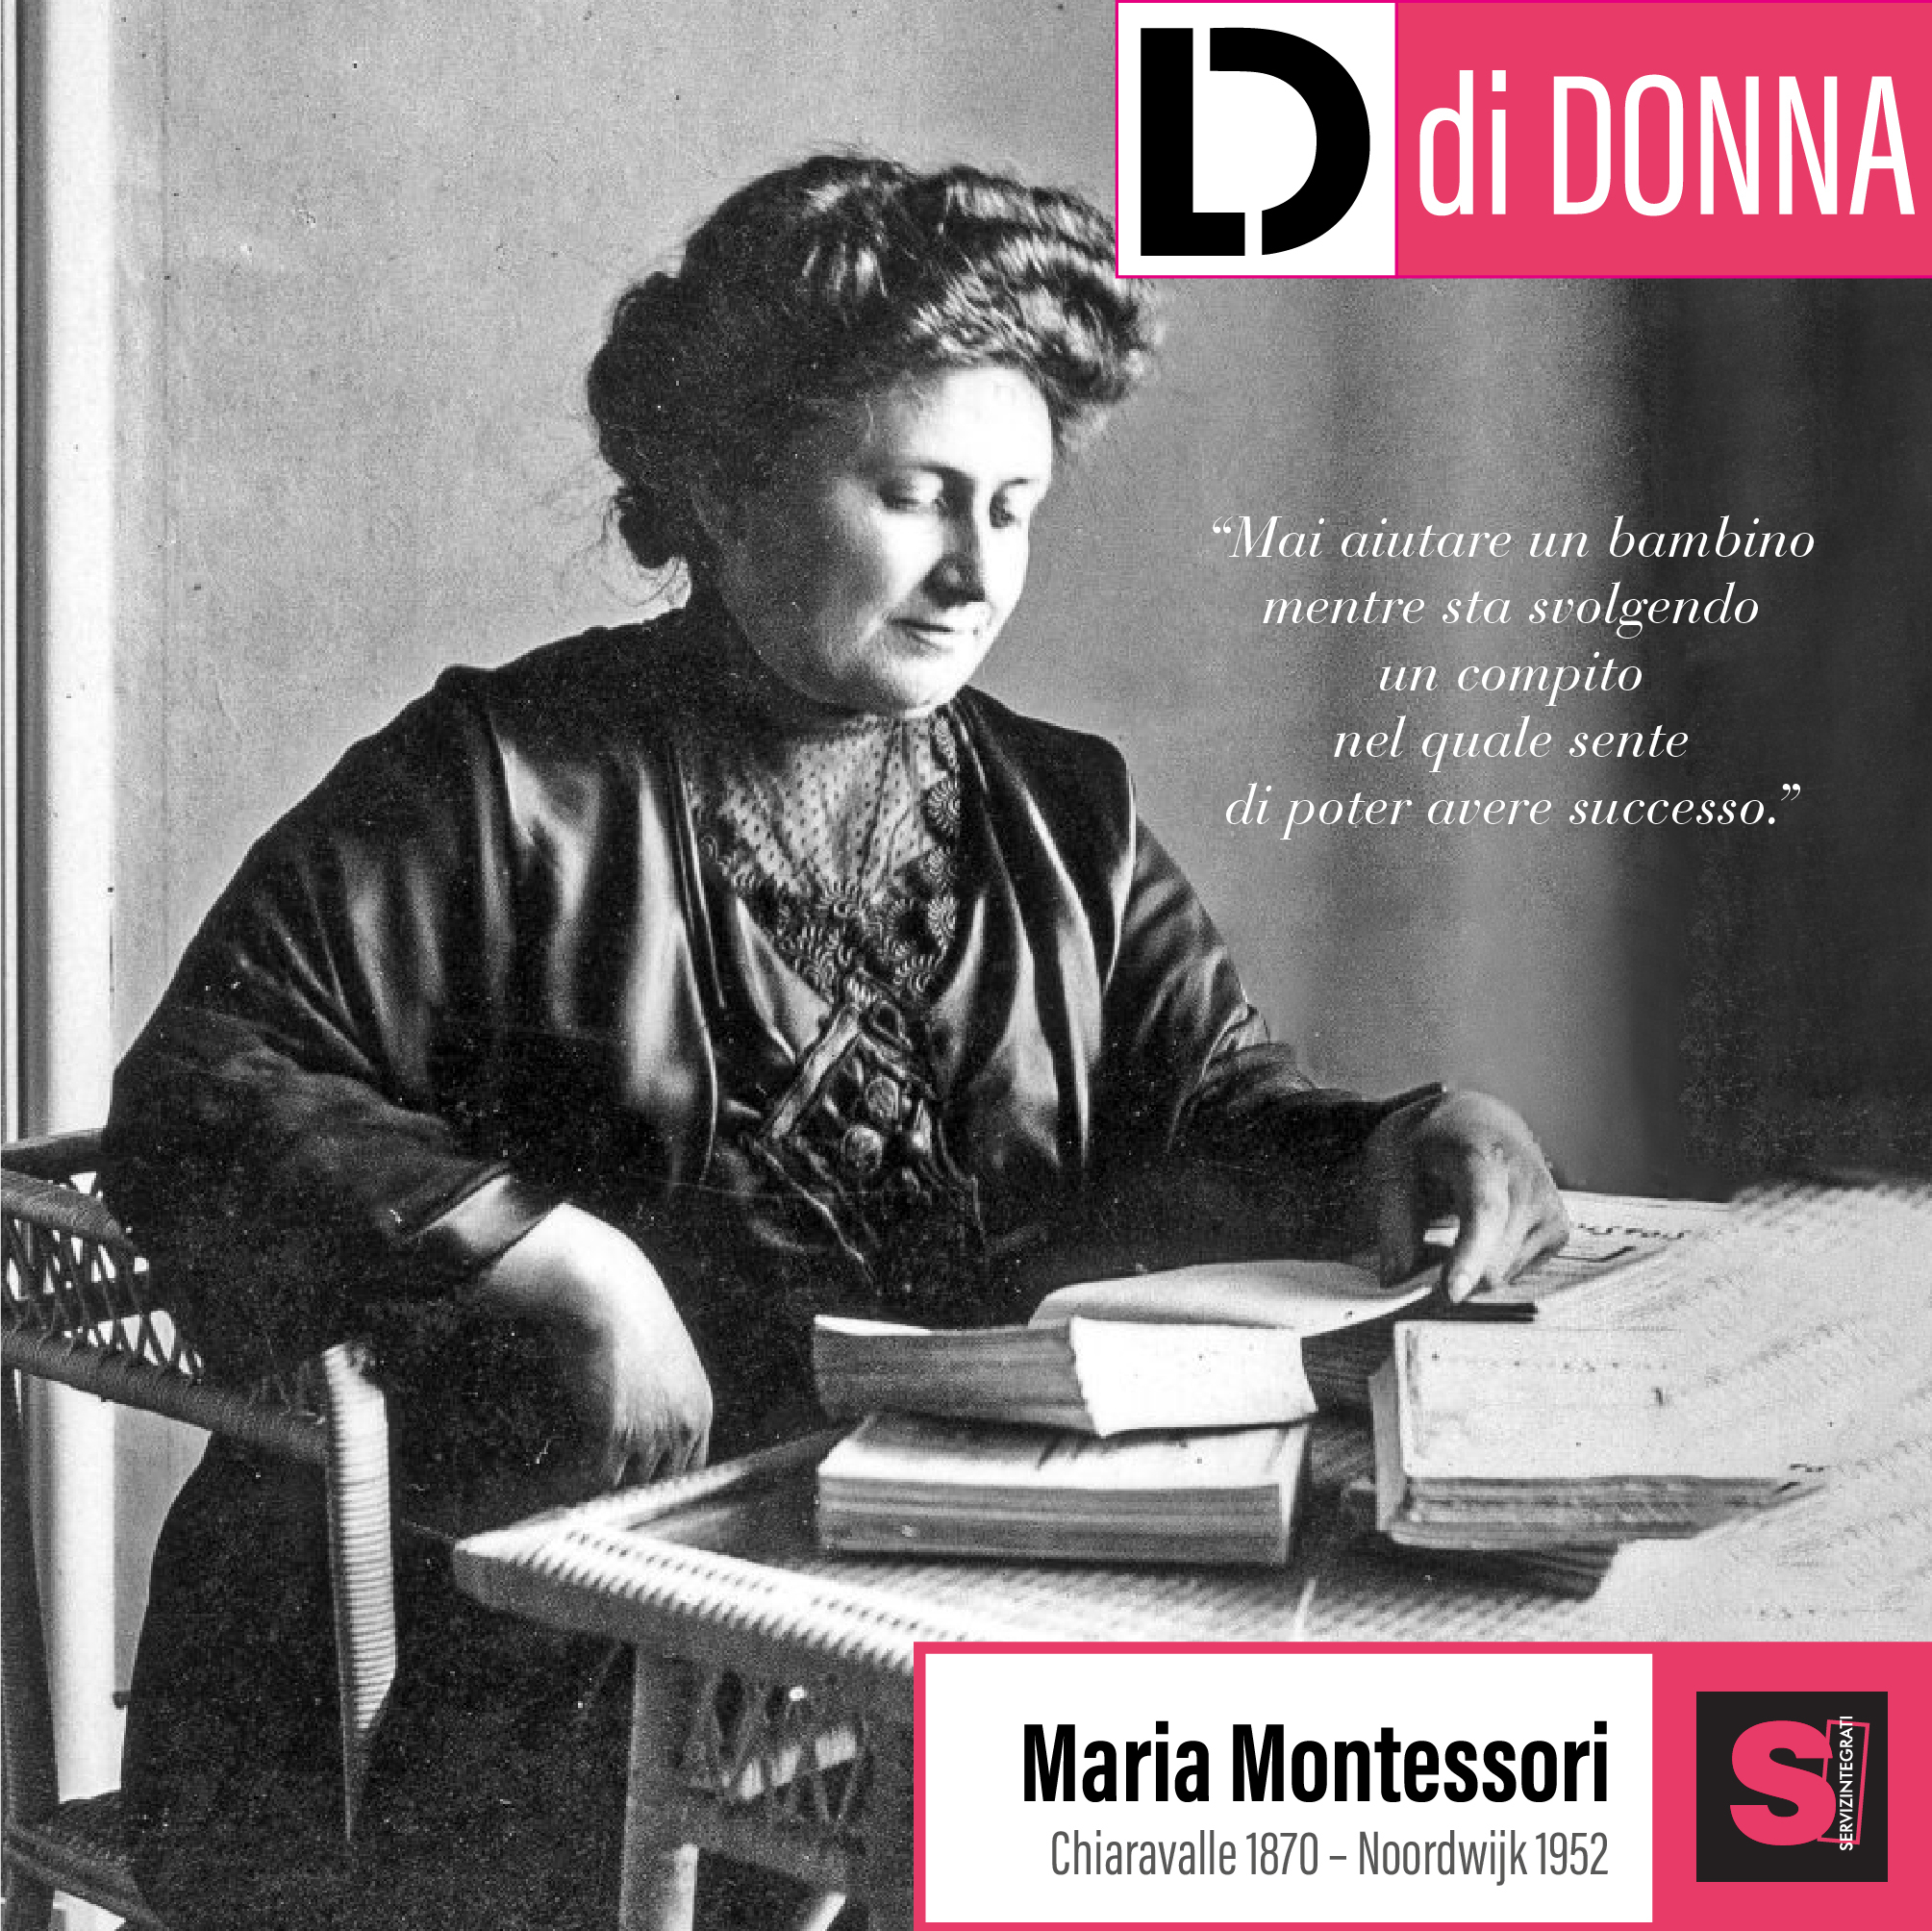 Maria Montessori ovvero la pedagogia